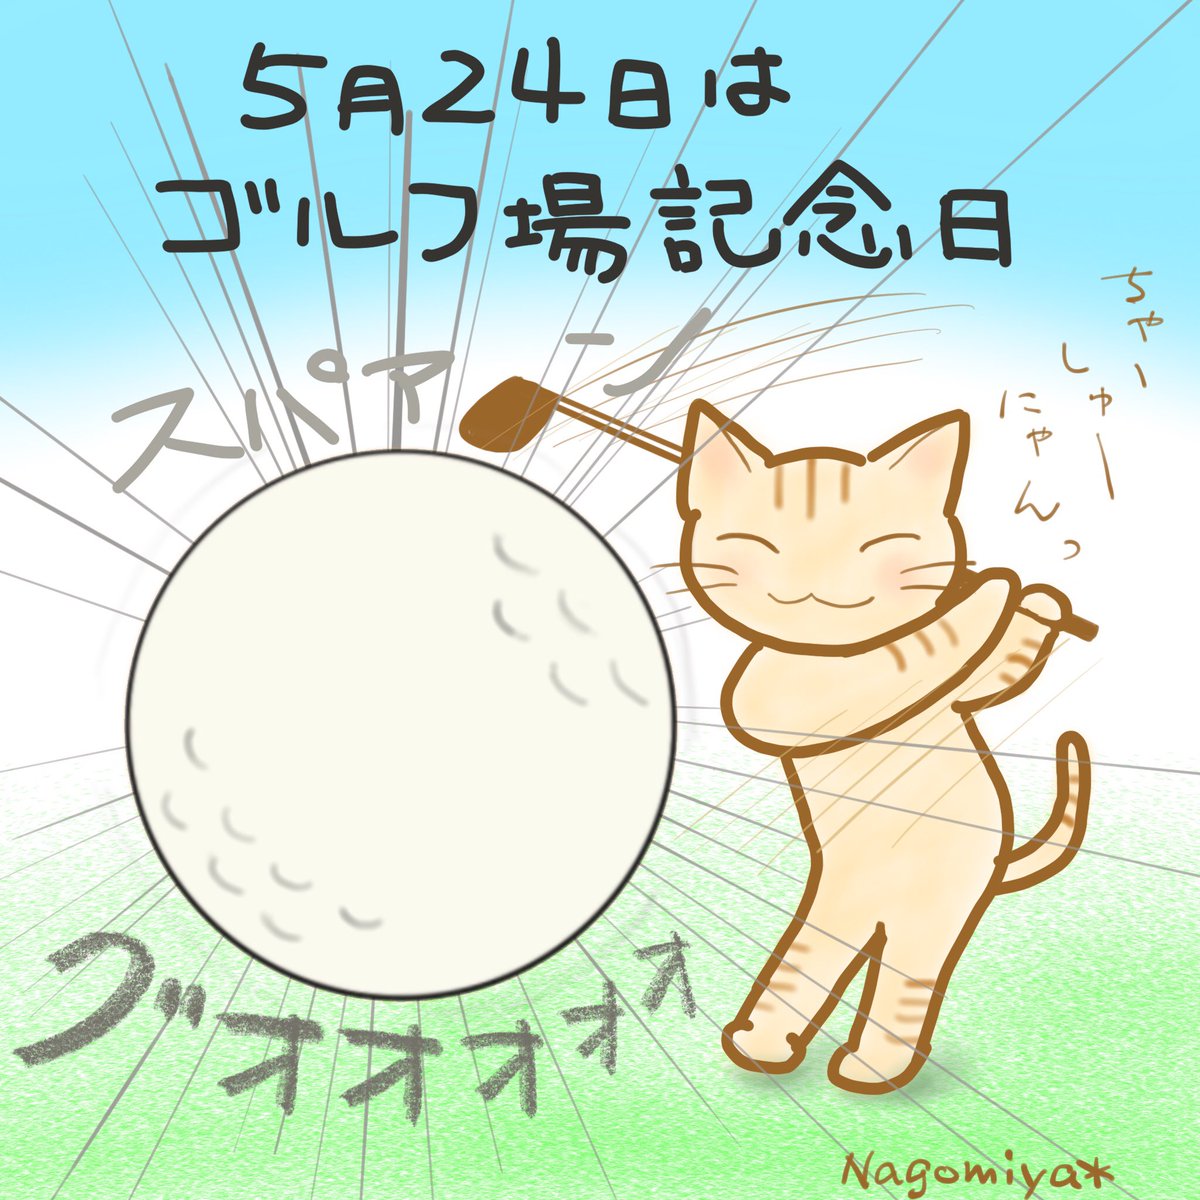 Nagomiya Twitter પર 5月24日は ゴルフ場記念日 猫にゴルフさせるって難しいwww 今日は何の日 何の日 なんの日 ゴルフ ゴルフ場 Nagomiyaイラスト イラスト らくがき お絵かき Ipadpro Procreate プロクリエイト 猫絵 猫イラスト 猫 ねこ ネコ